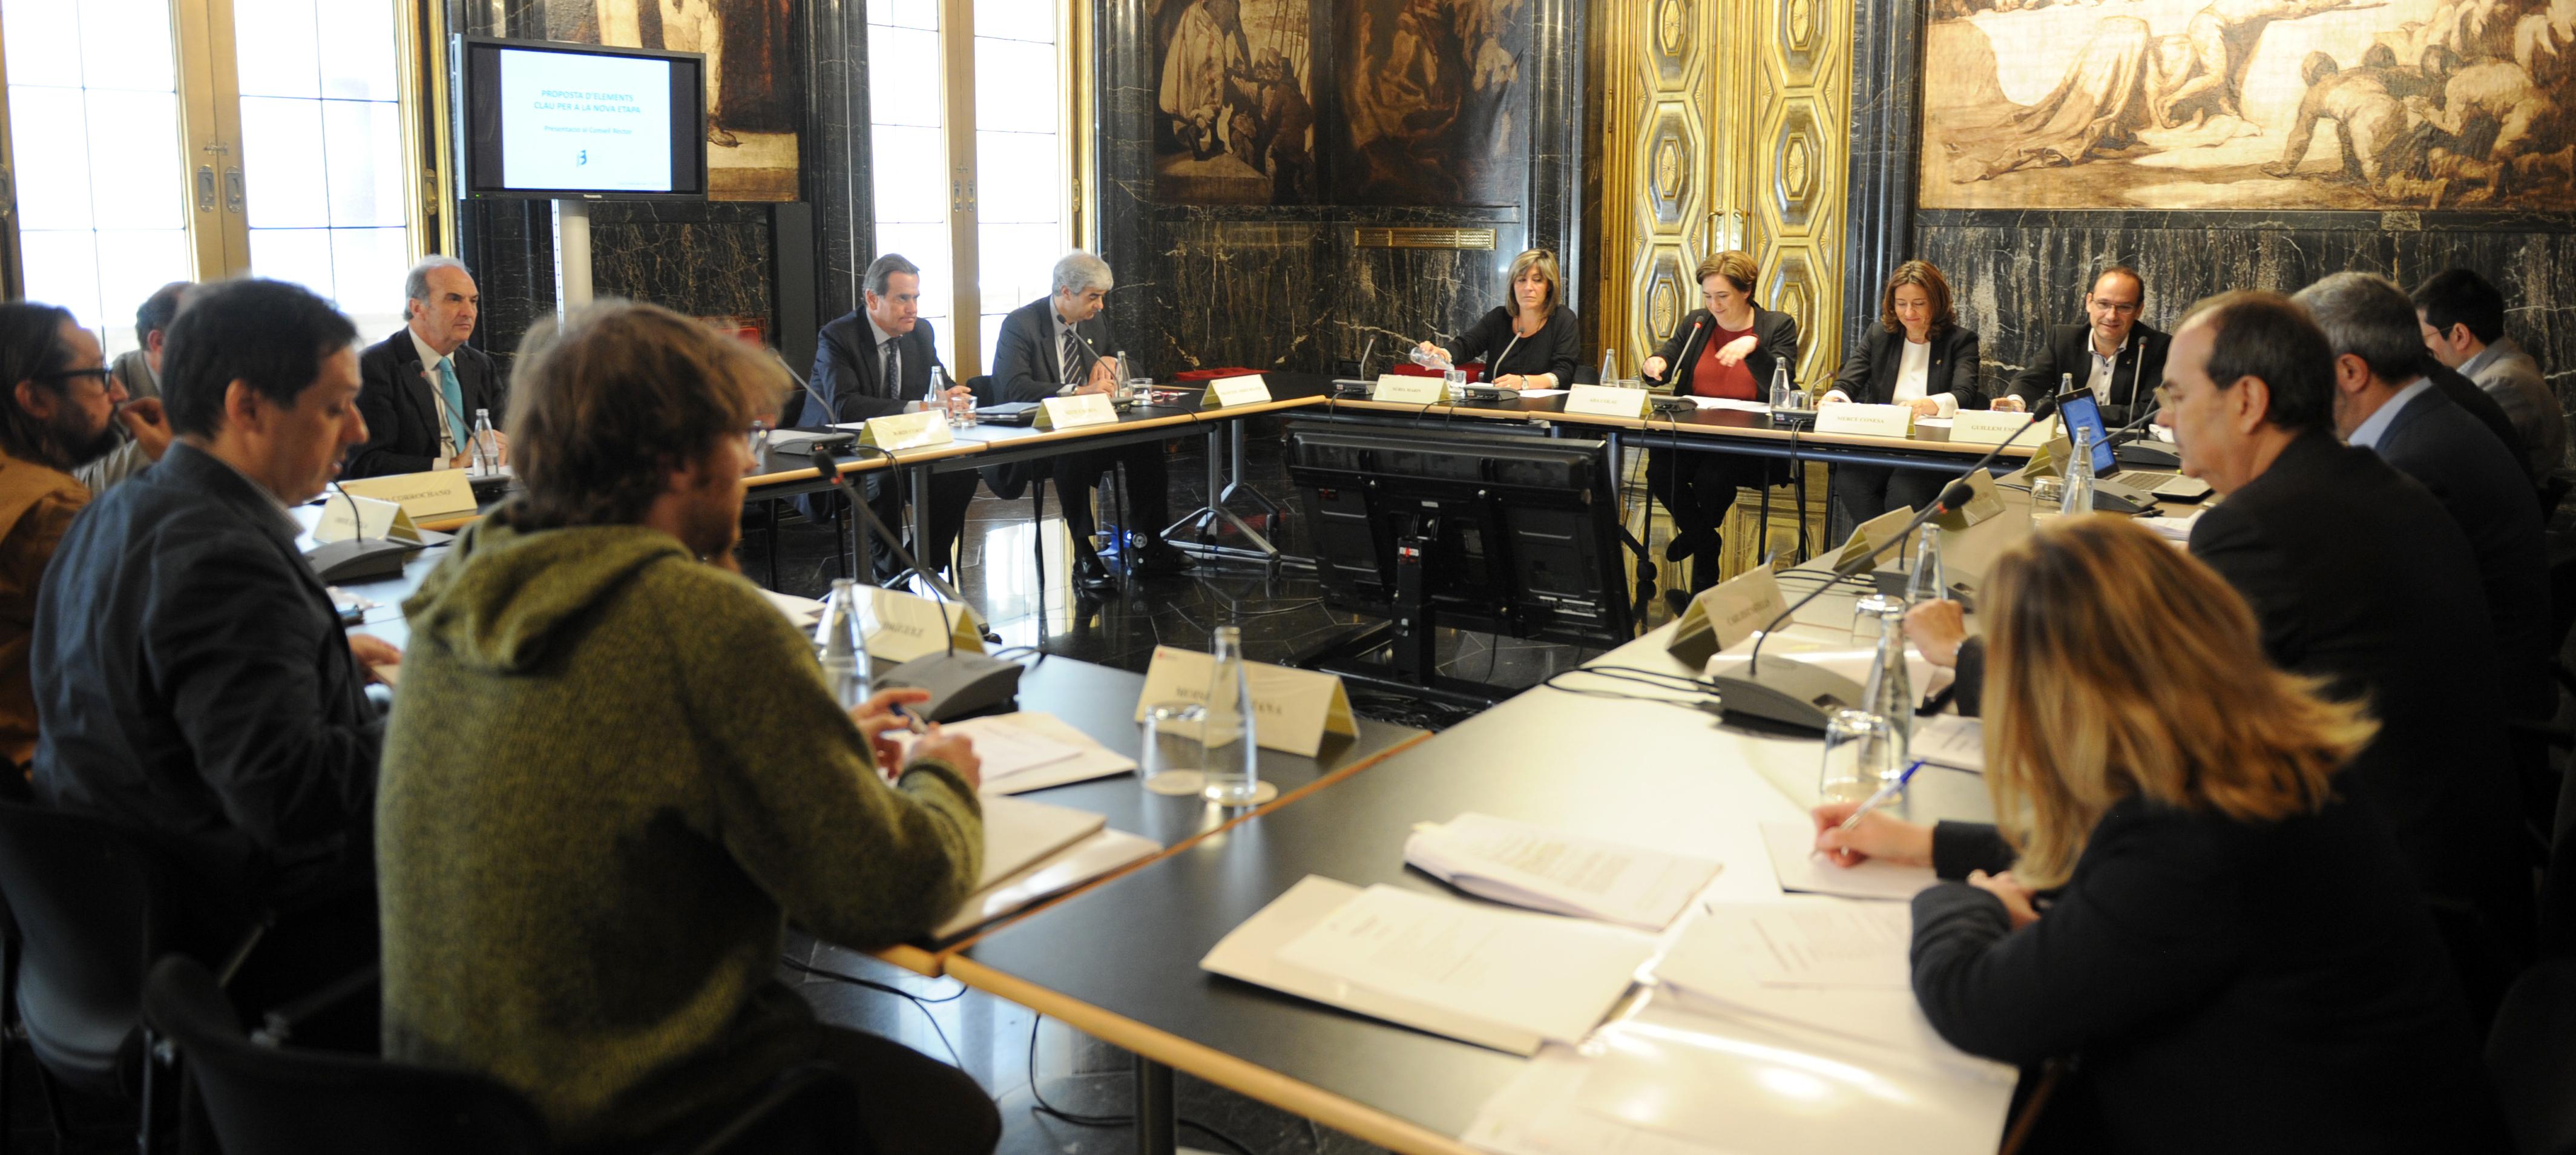 Reunió del Consell Rector, 13 de maig, Ajuntament  de Barcelona